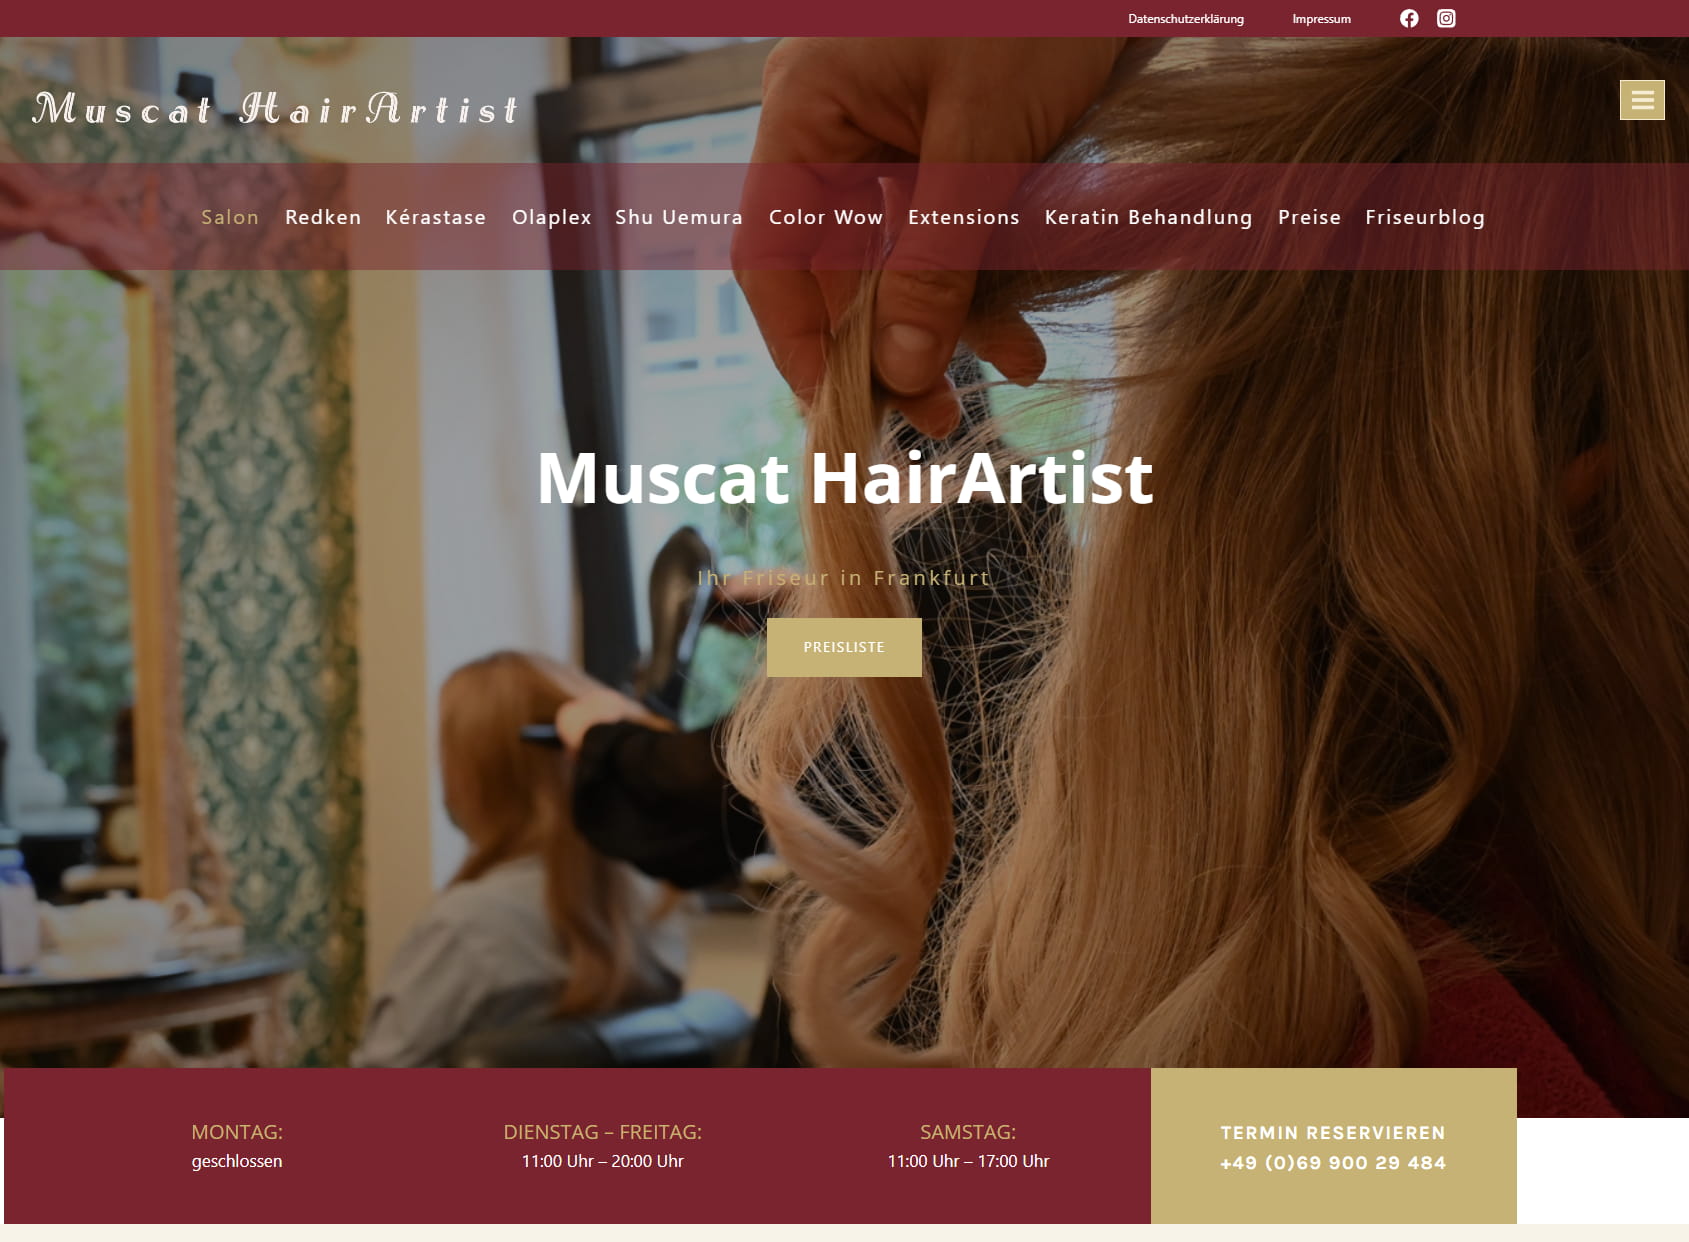 Muscat HairArtist - Ihr Friseur in Frankfurt